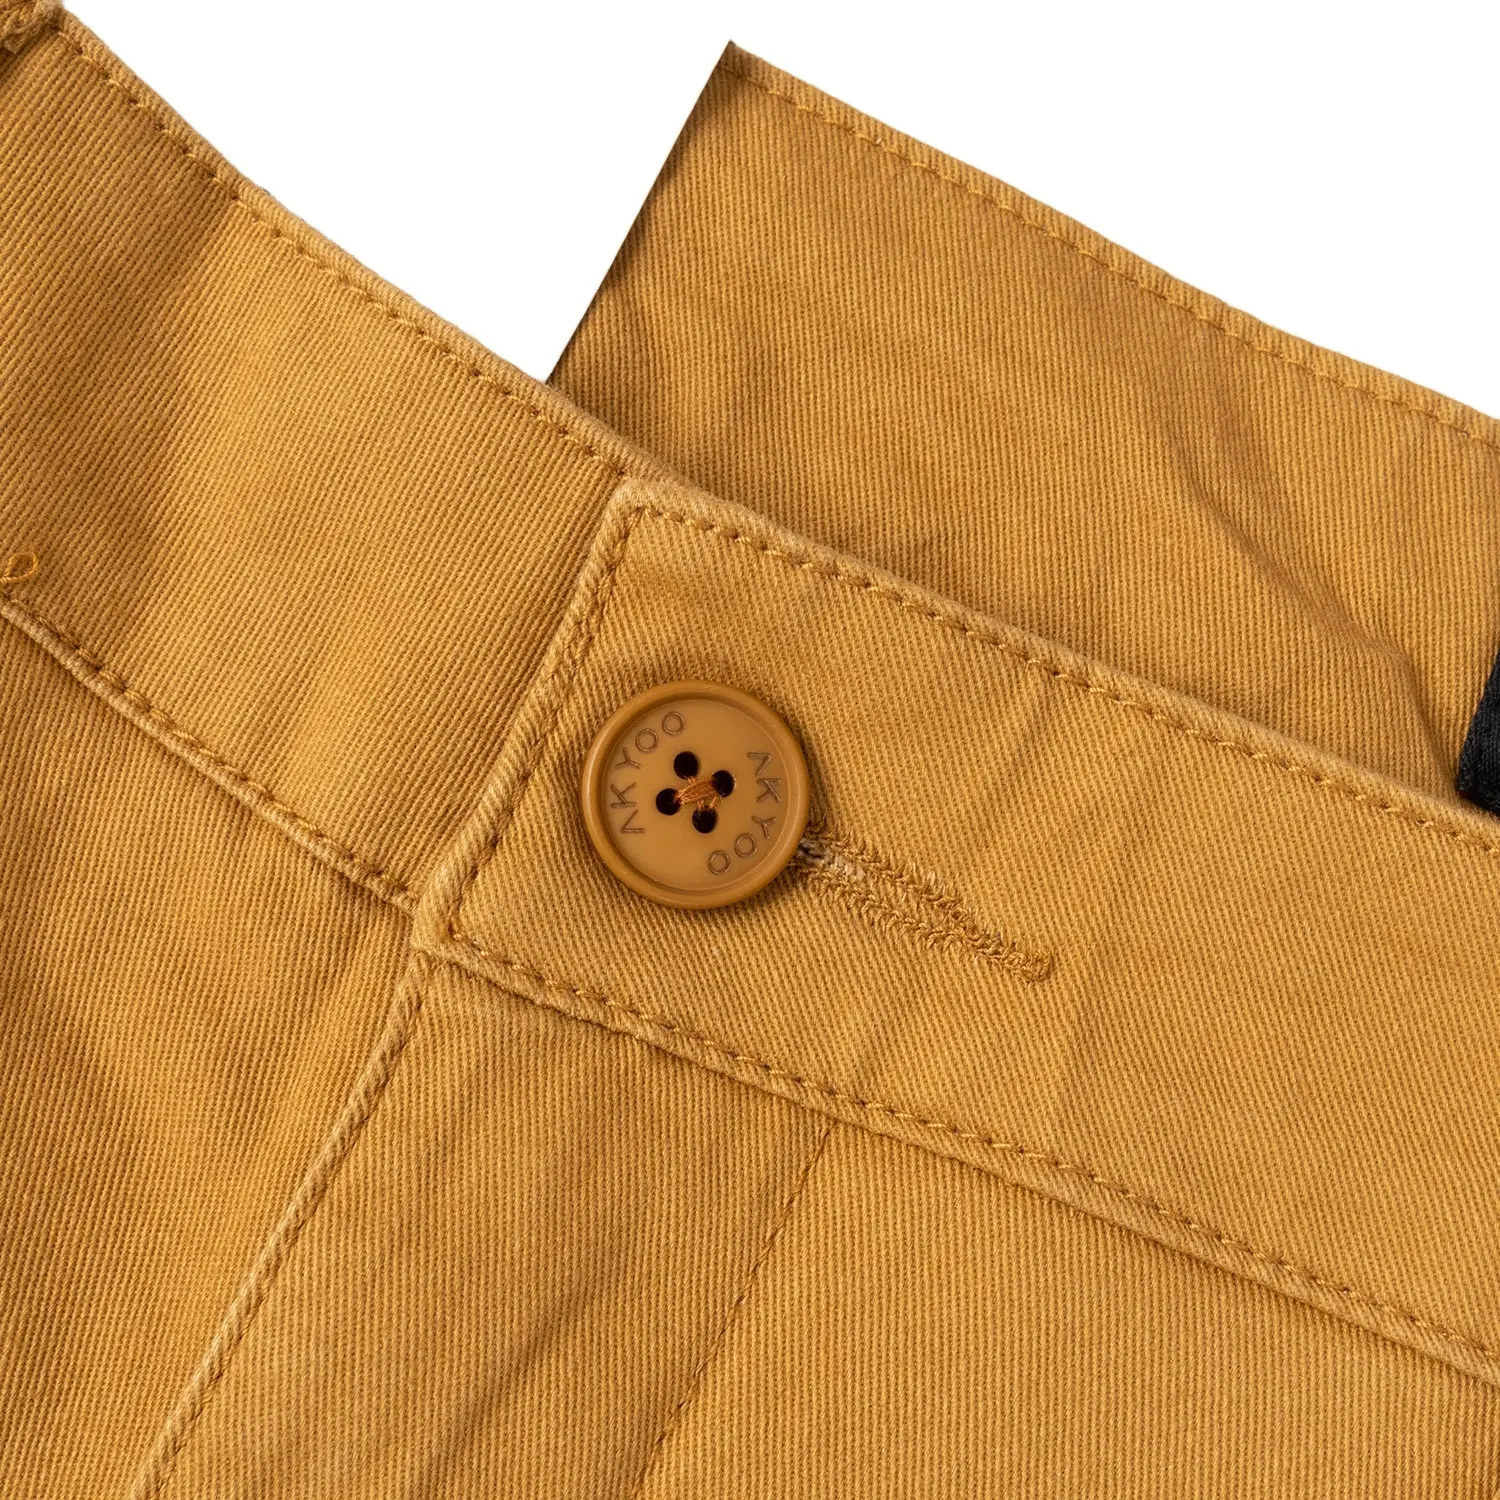 กางเกงผู้ชายไซส์ใหญ่พิเศษคุณภาพสูงสีเบจผ้าทอสั้นสีกากีแฟชั่นสำหรับผู้ชายตามสั่งจากเวียดนาม